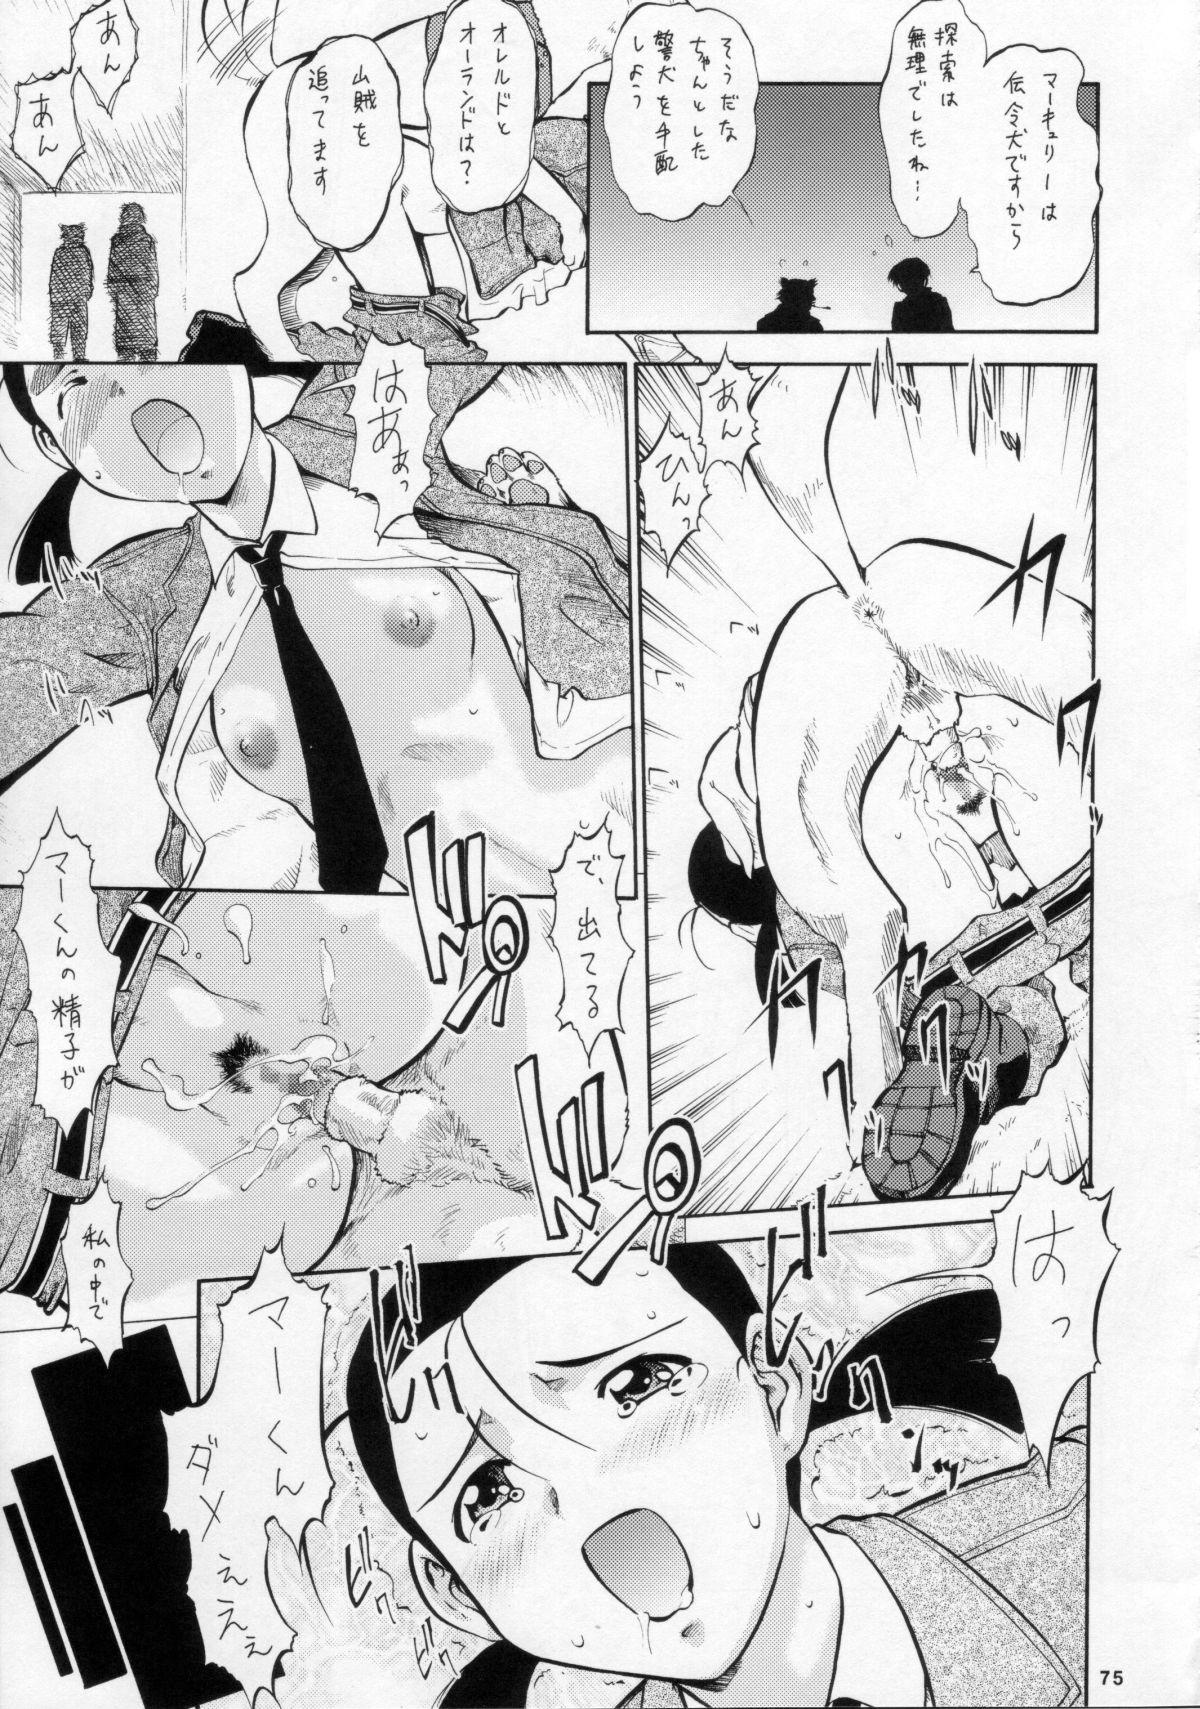 Umeta Manga Shuu 11 -nin iru! 73